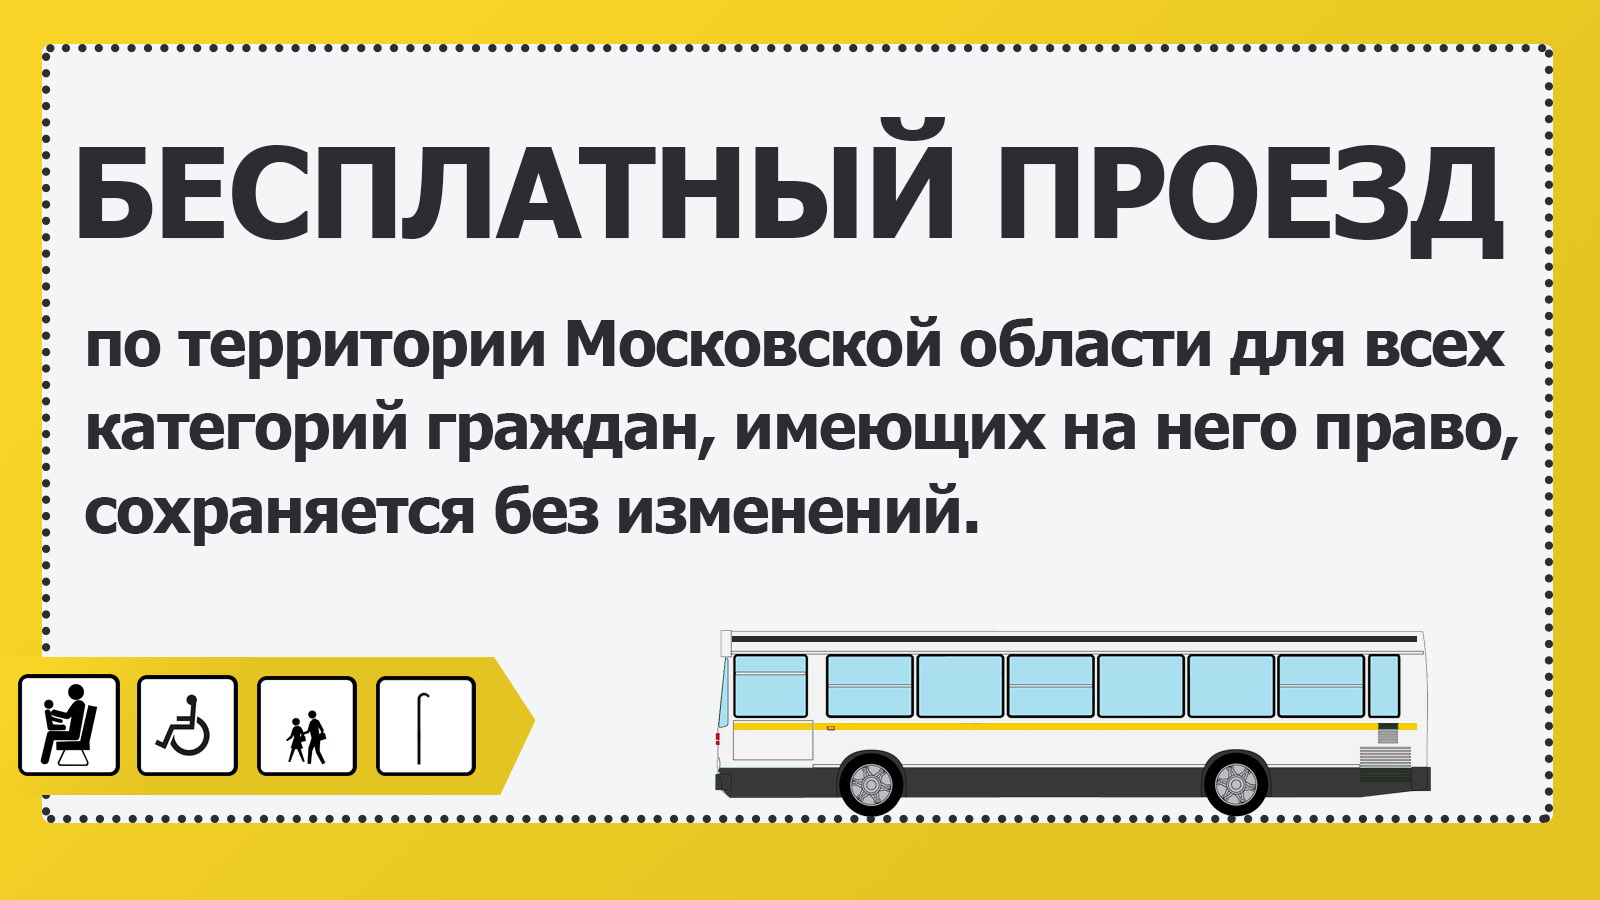 Можно ездить по московской области. Маршрутки по социальной карте. Льготный проезд в автобусе. Автобус льготы. Карта для бесплатного проезда.